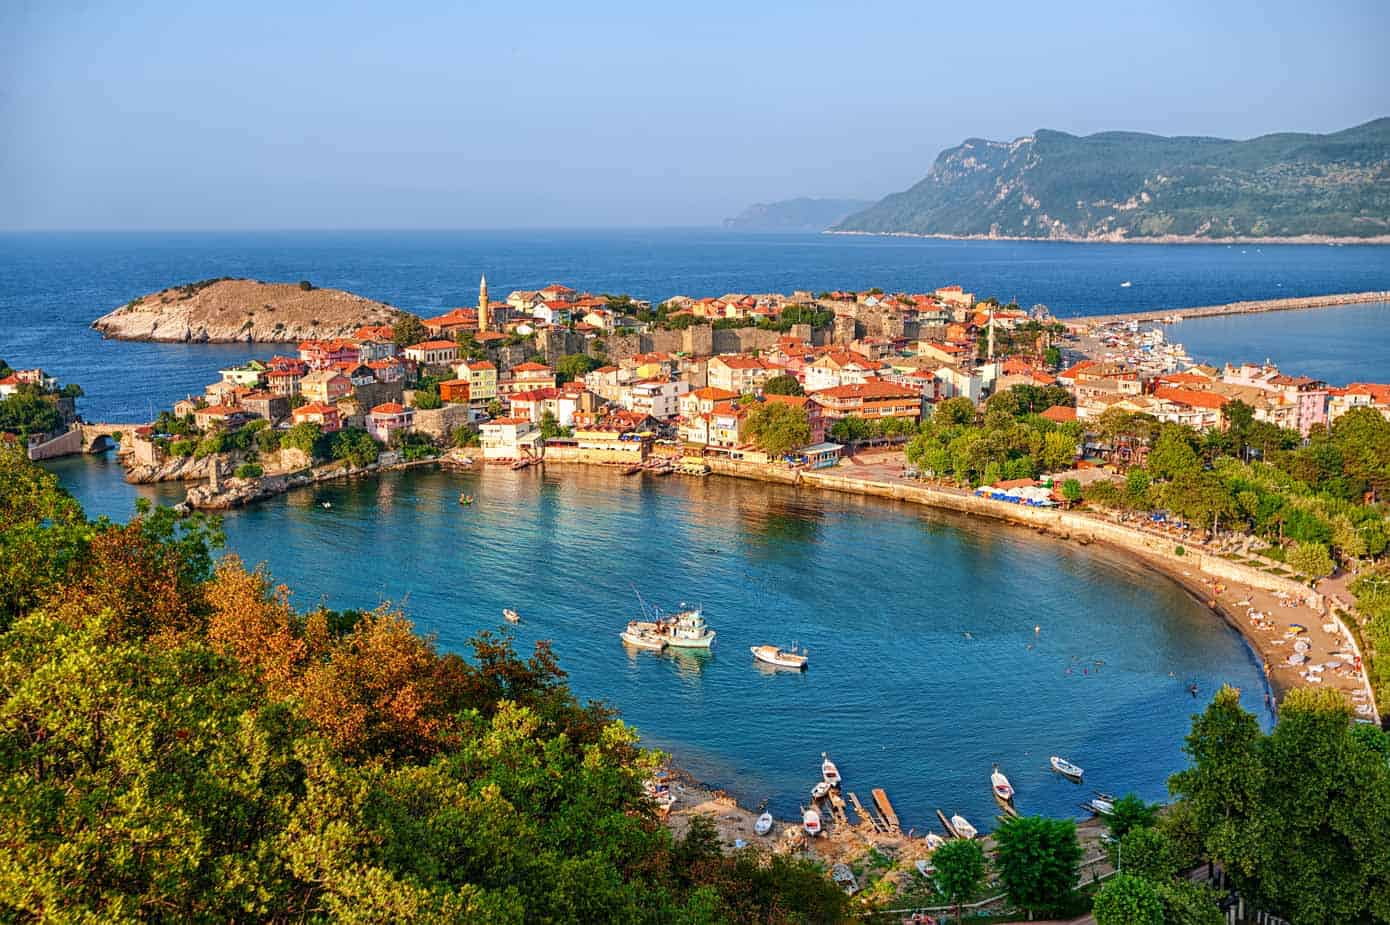 Amasra, Turkey on the Black Sea.